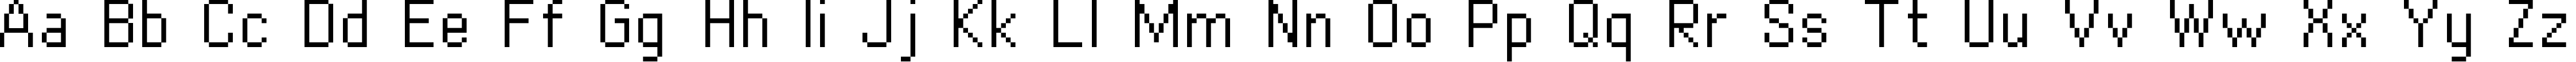 Пример написания английского алфавита шрифтом copy 10_56